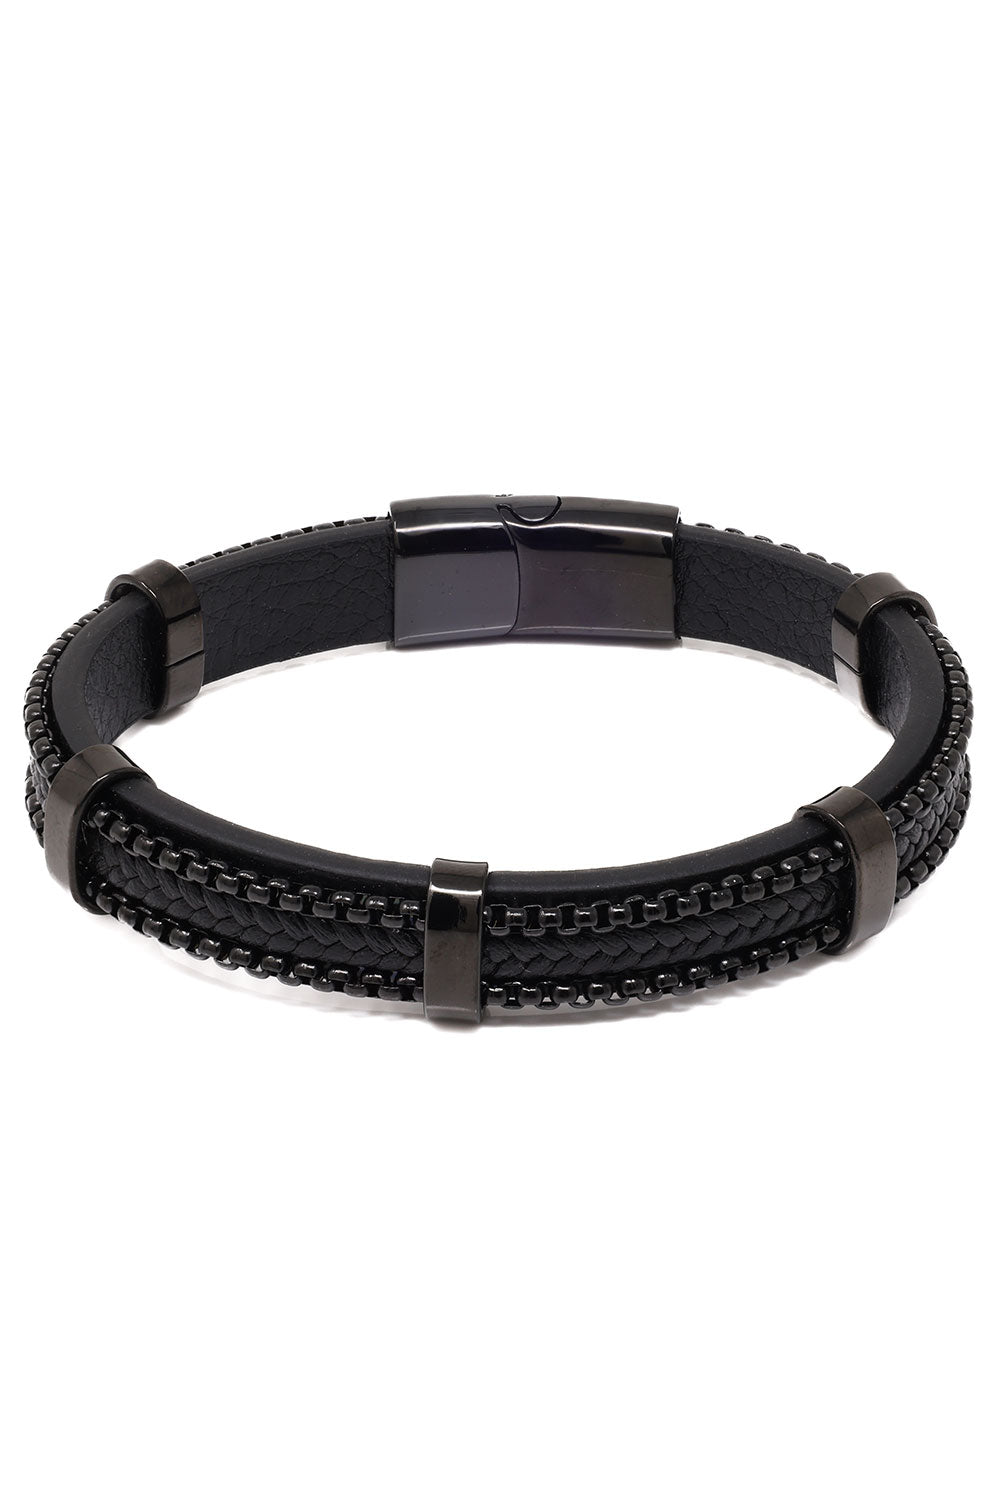 Barabas Unisex Braided Leather and Stones Bangle Bracelets 4BMS02 Black Black